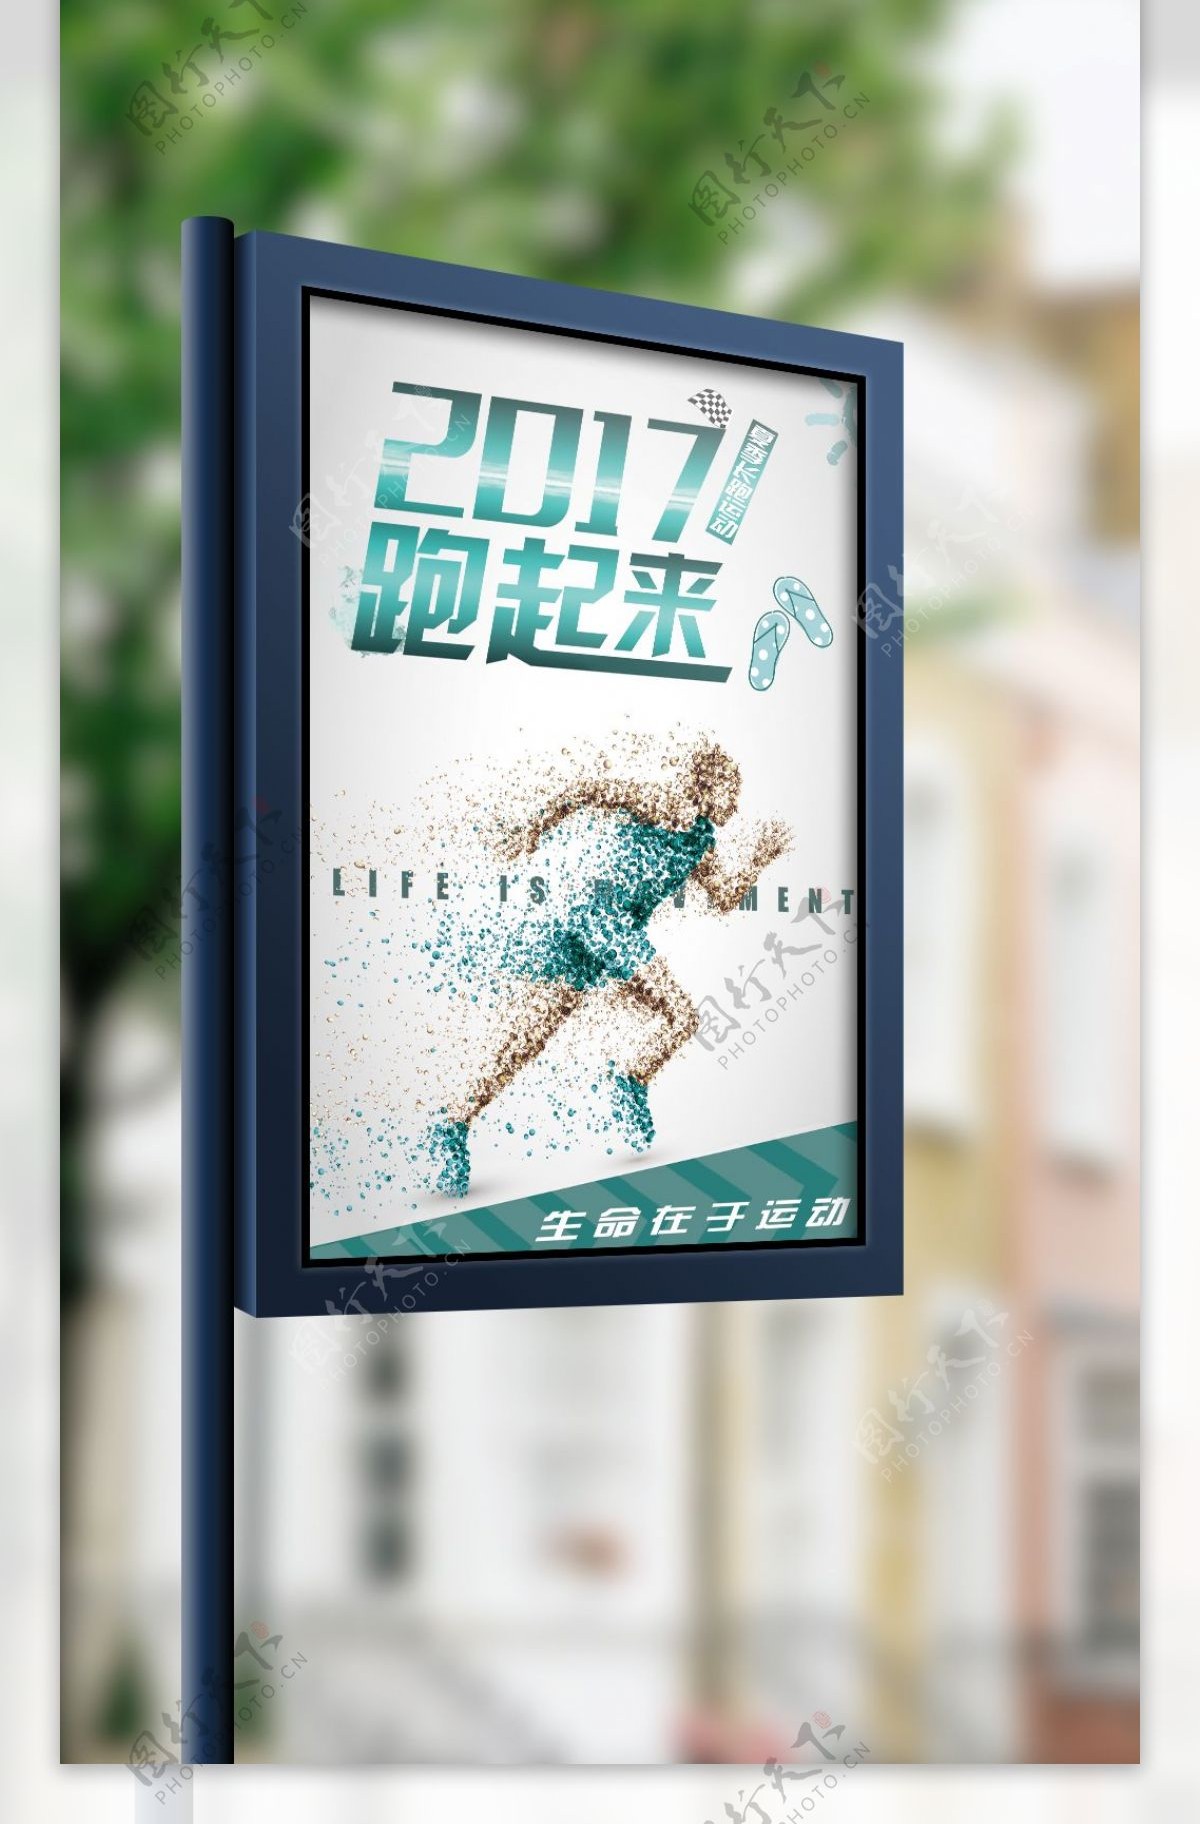 2017运动海报设计模板